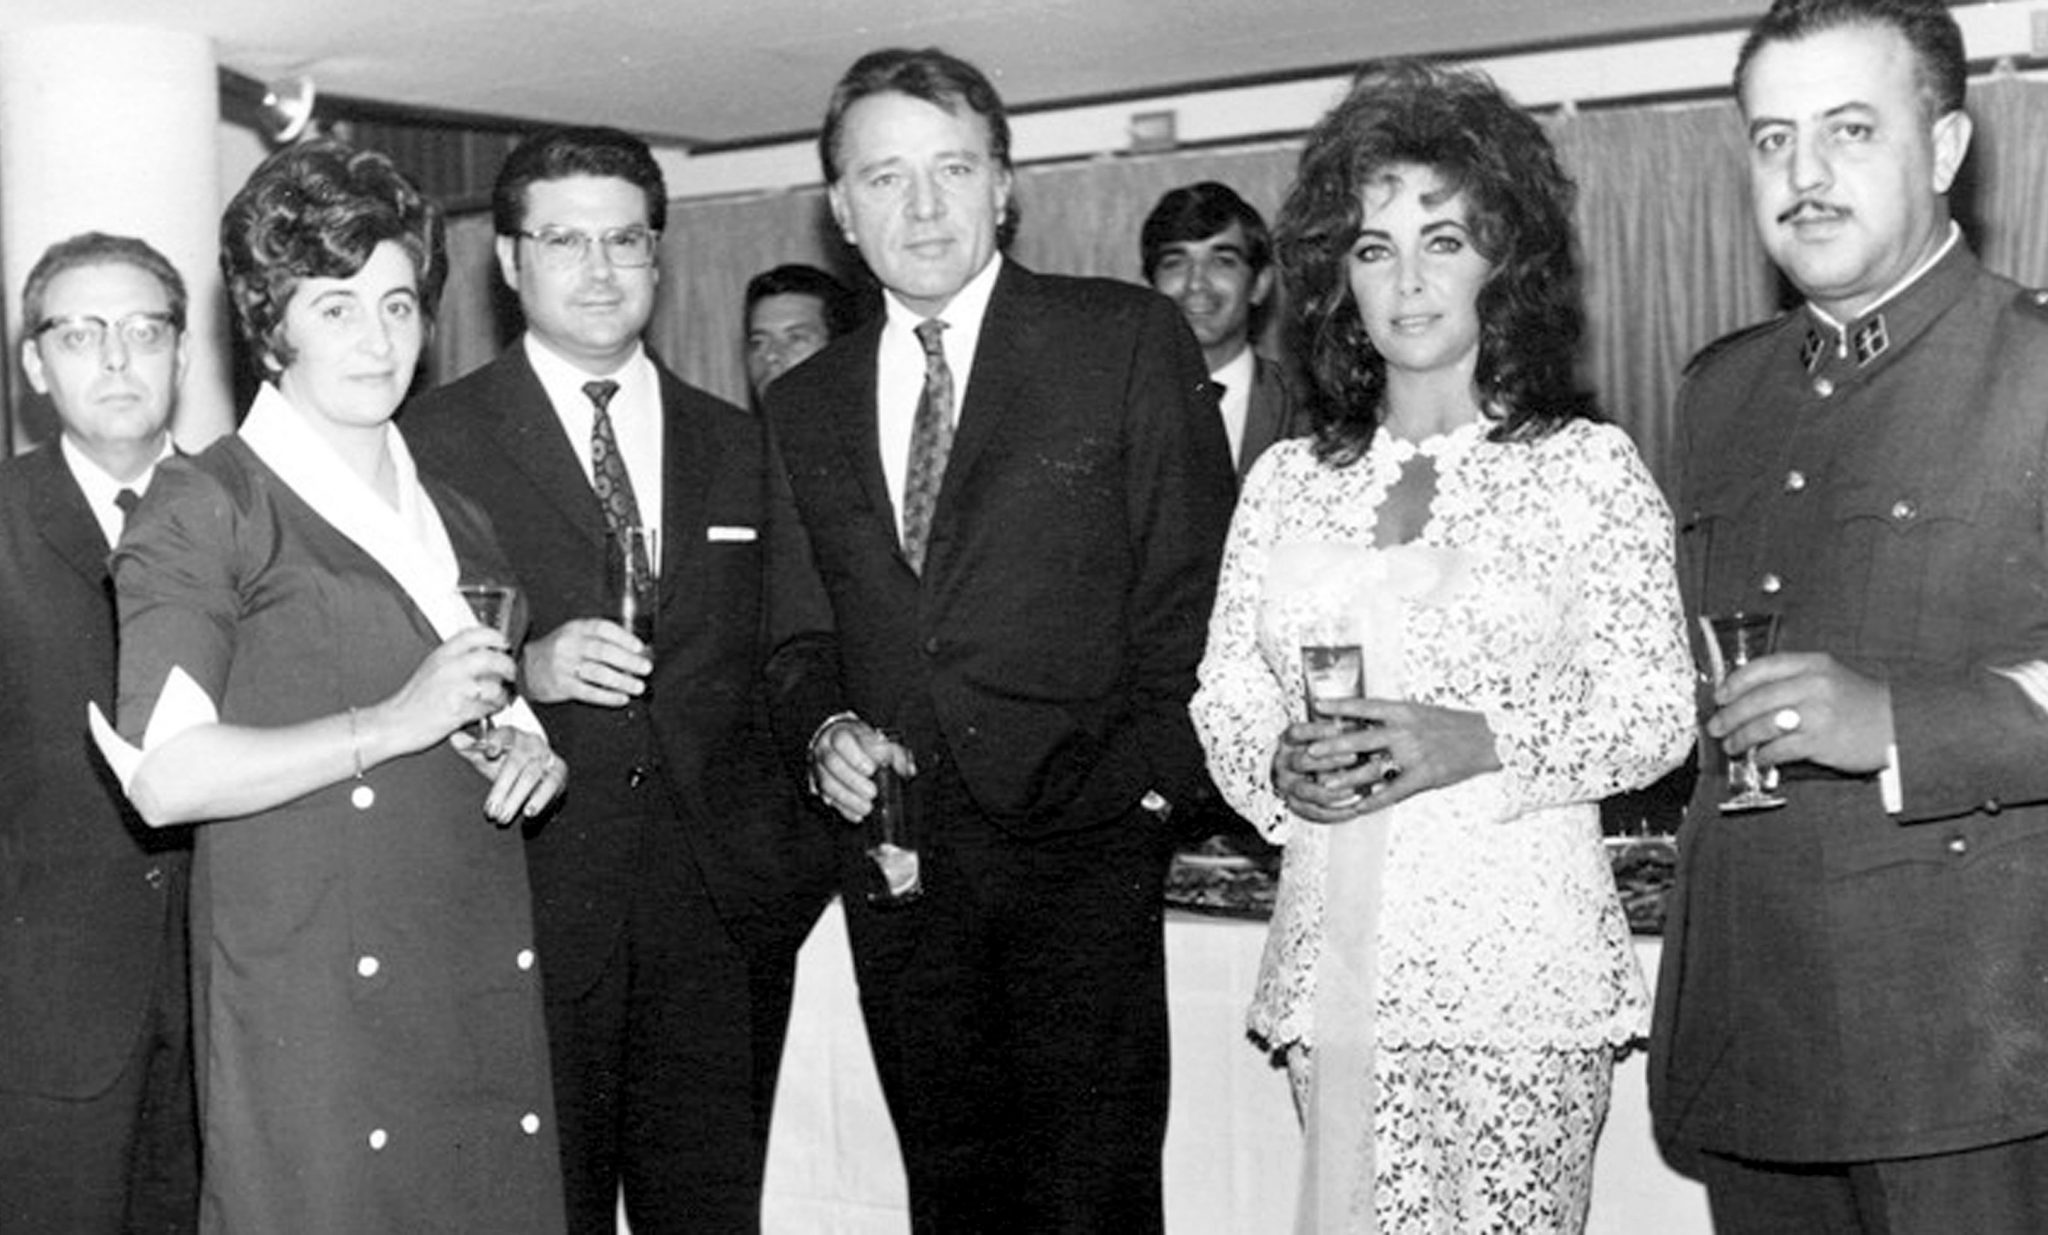 Foto histórica de la estancia de Richard Burton y Elizabeth Taylor en Los Cristianos, en el hotel Moreque, a principios de los años setenta del siglo pasado. Foto cedida